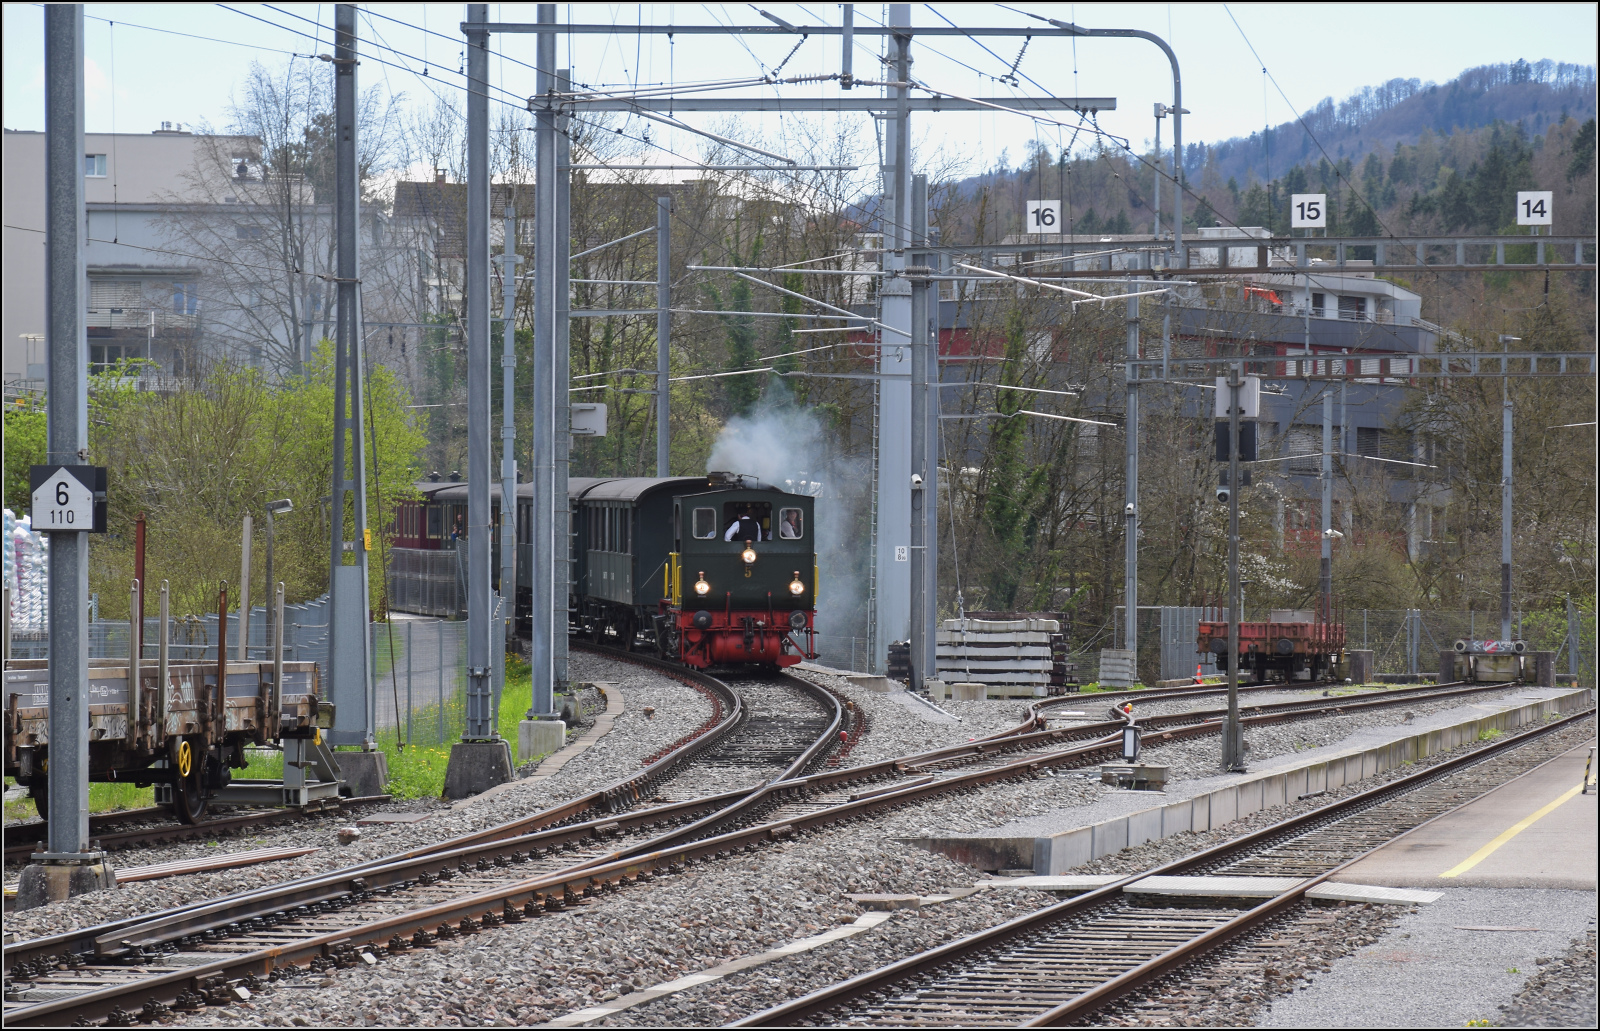 Zu den Ostereiern im Sihlwald.

E 3/3 5 'Schnaaggi Schaaggi' der Sihlthalbahn bei Einfahrt in den Bahnhof Langnau-Gattikon. März 2024.